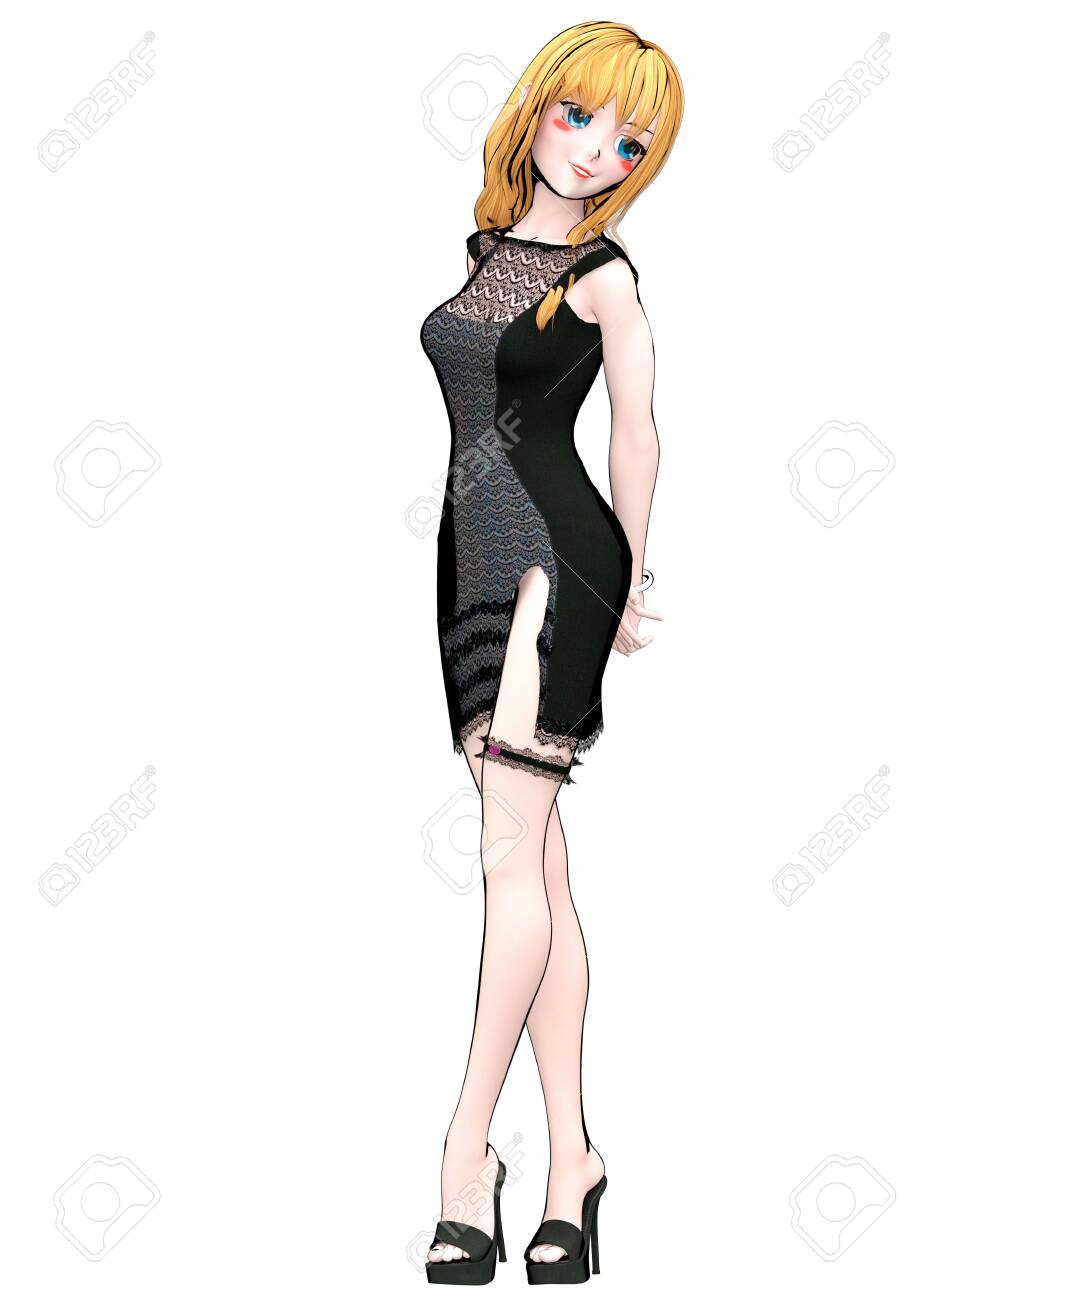 Best of Anime girl short dress